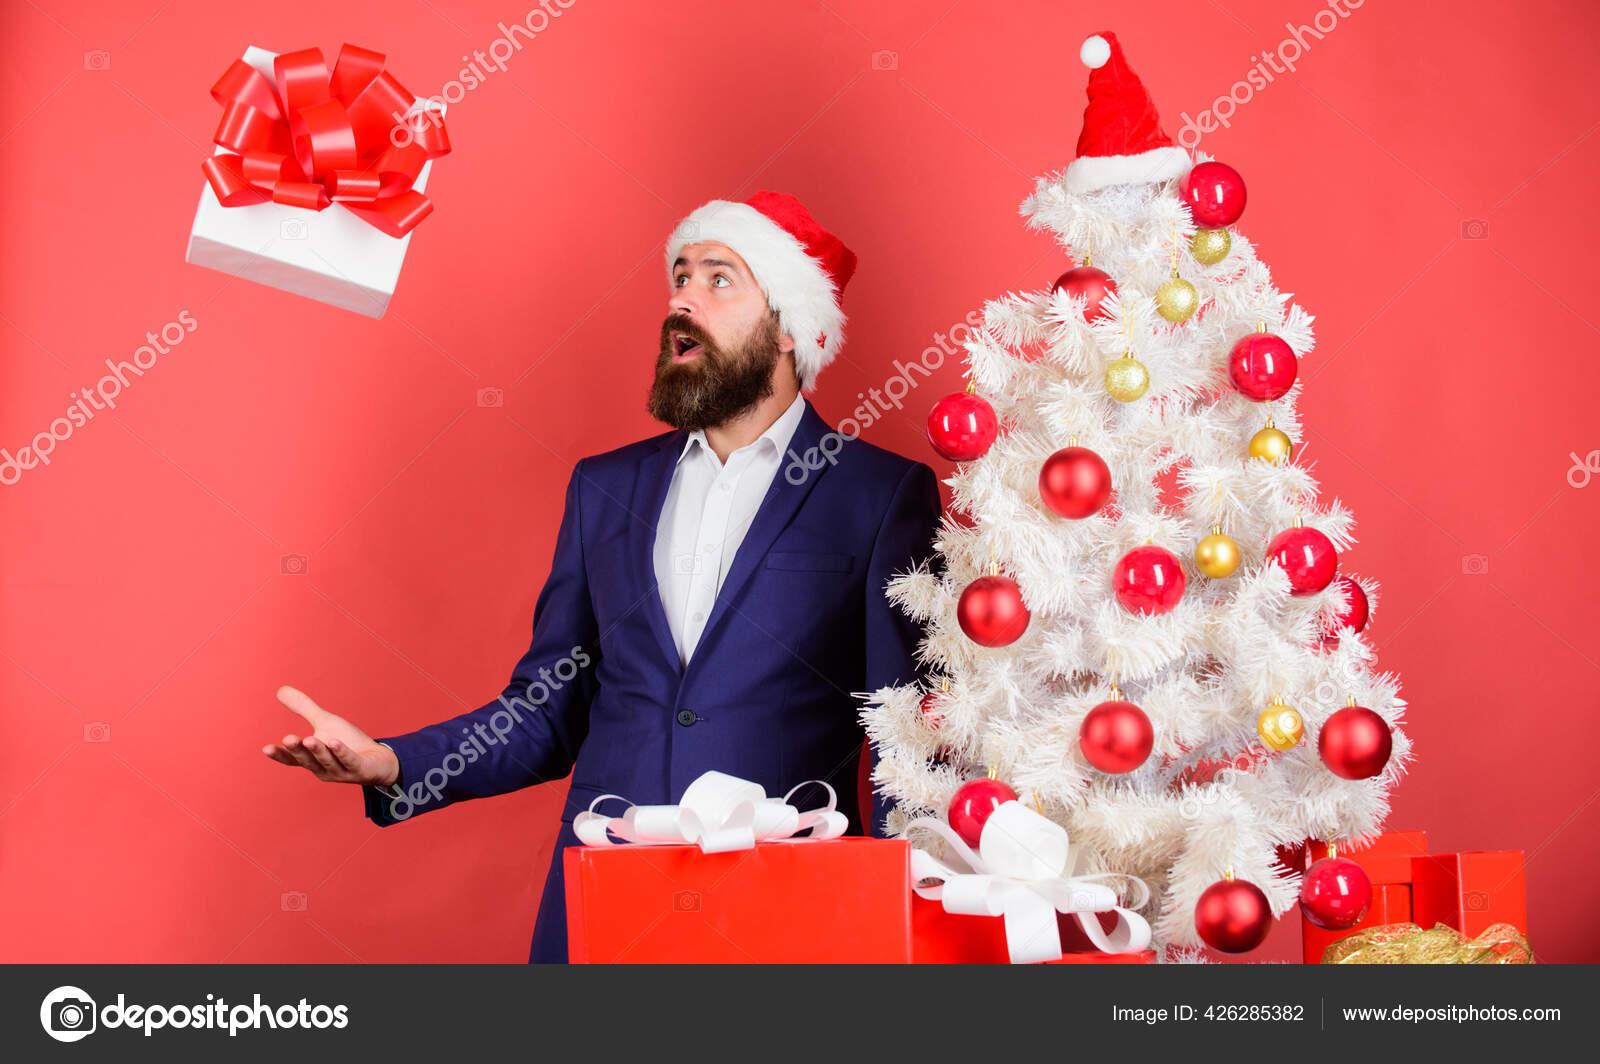 Entrega de regalos de navidad. hombre feliz con sombrero de santa mantenga  el regalo de navidad.